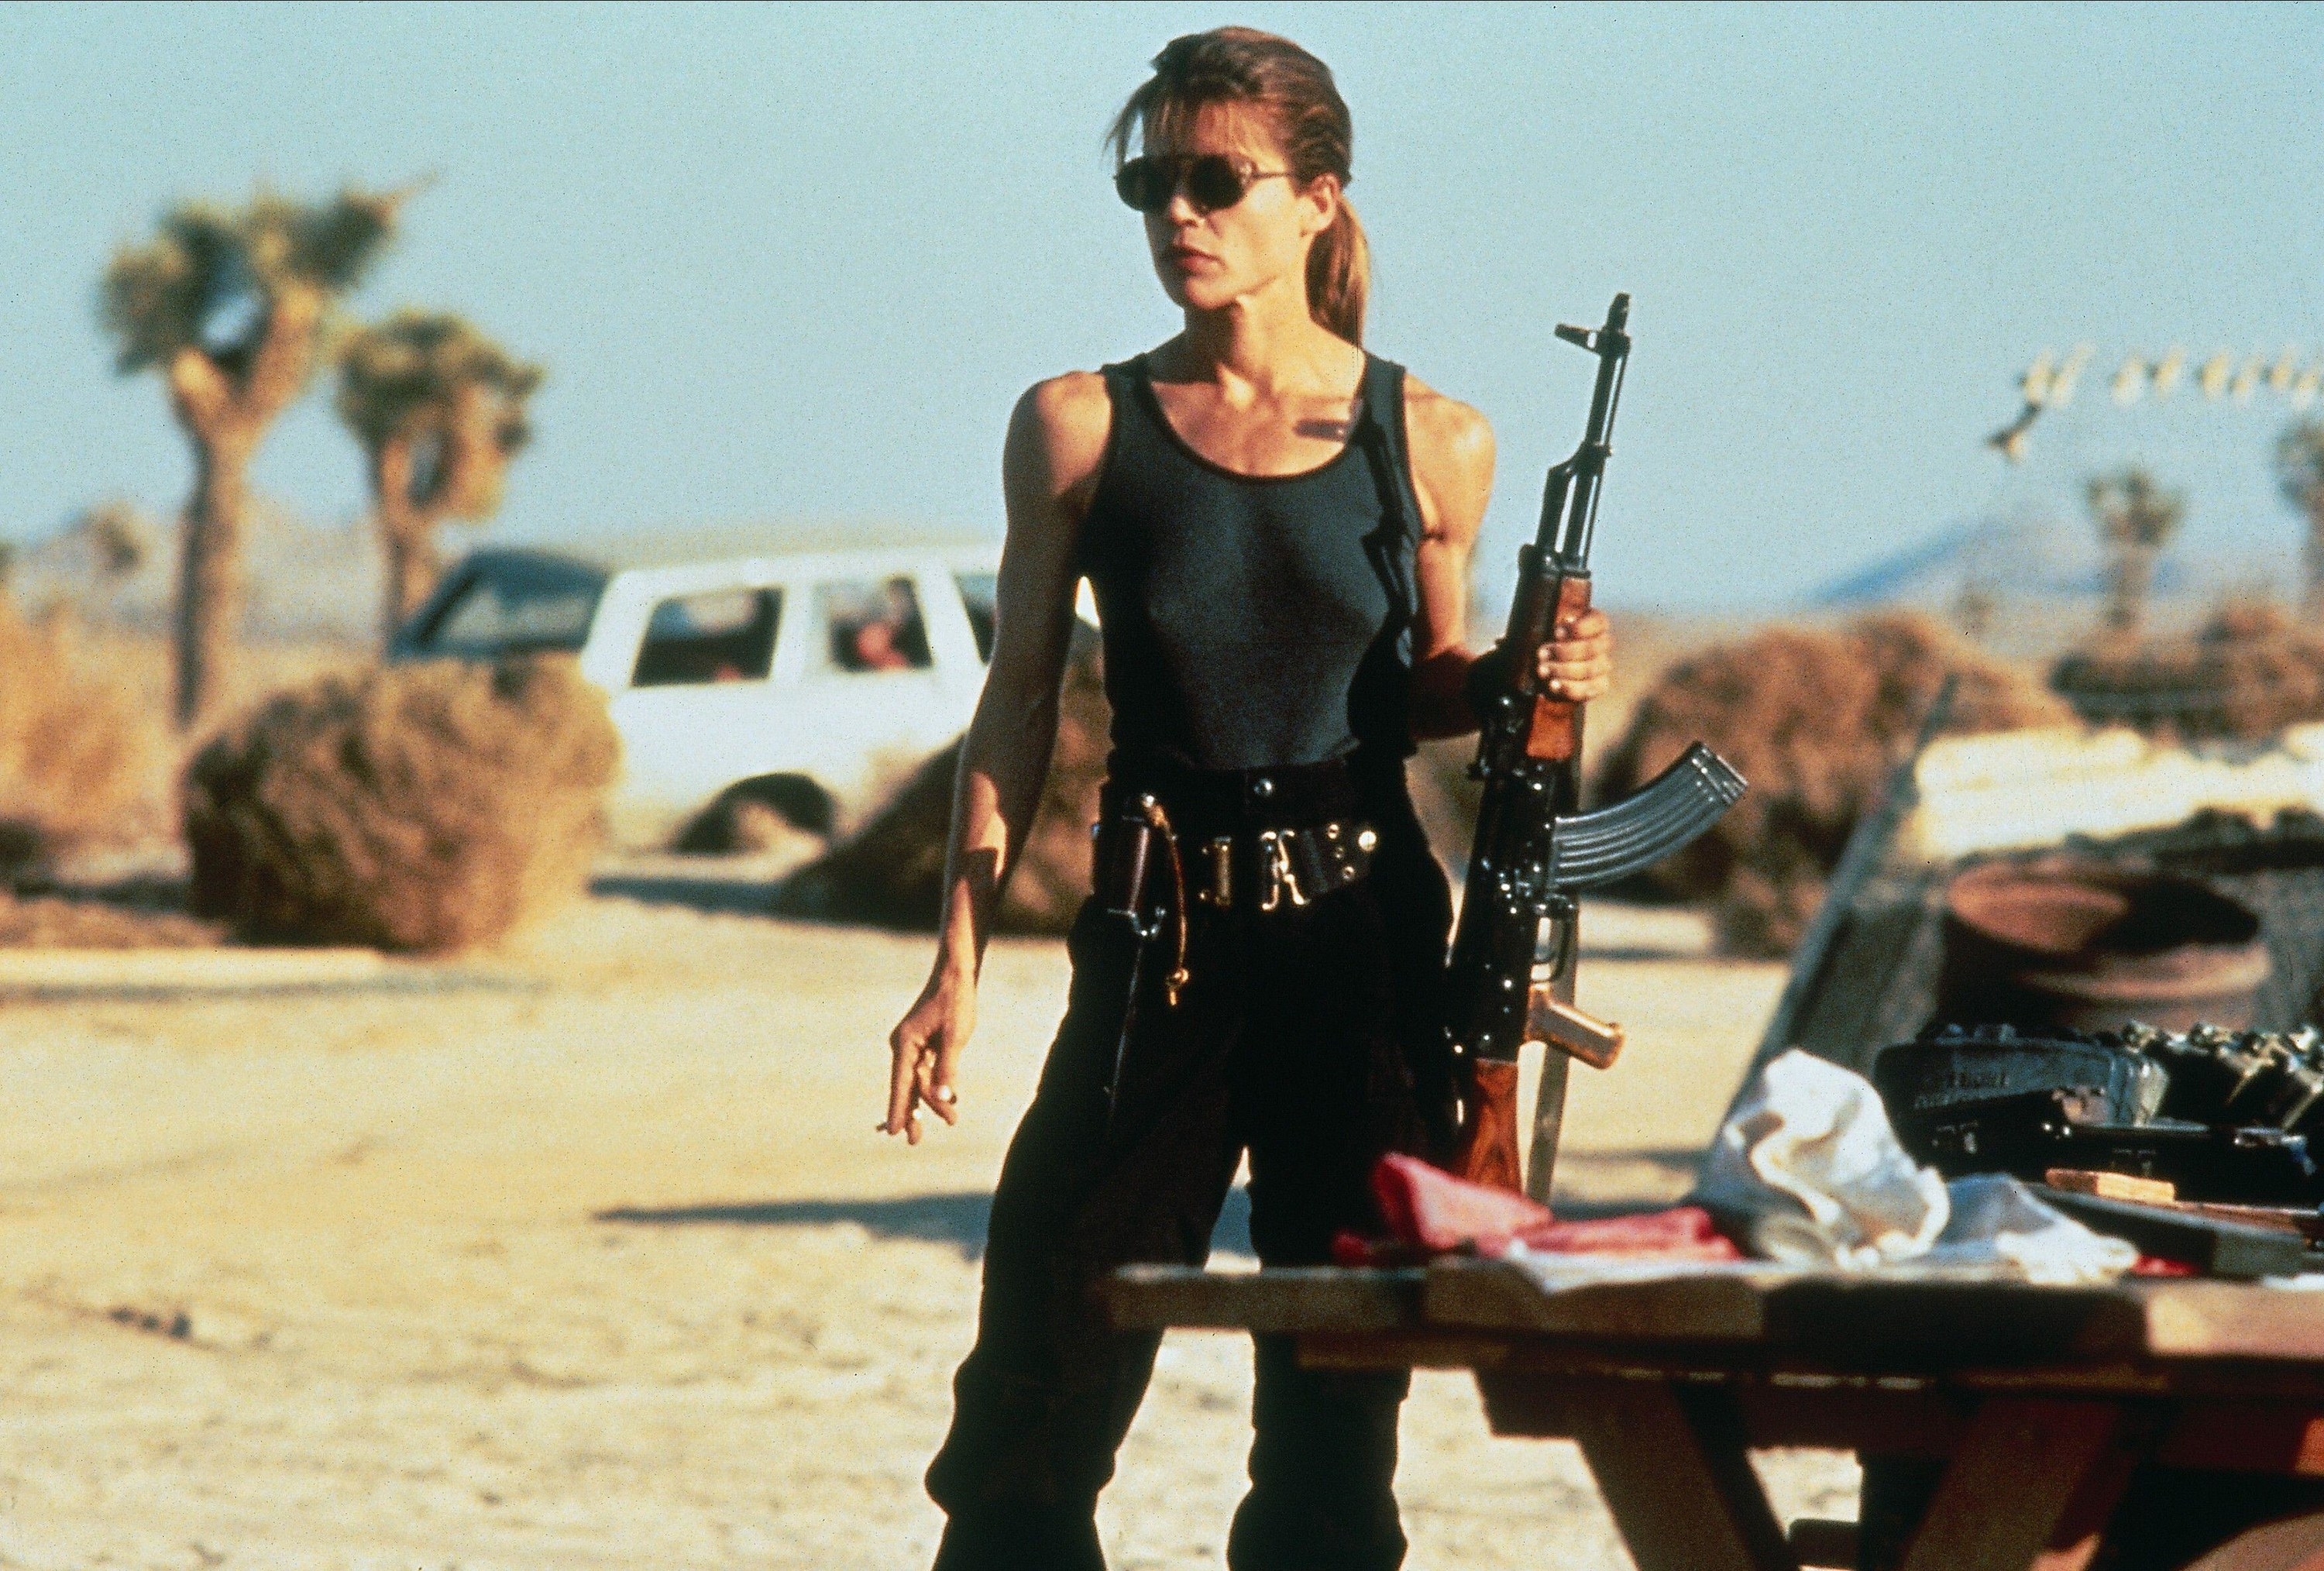 Linda Hamilton holds an assault rifle in a barren desert